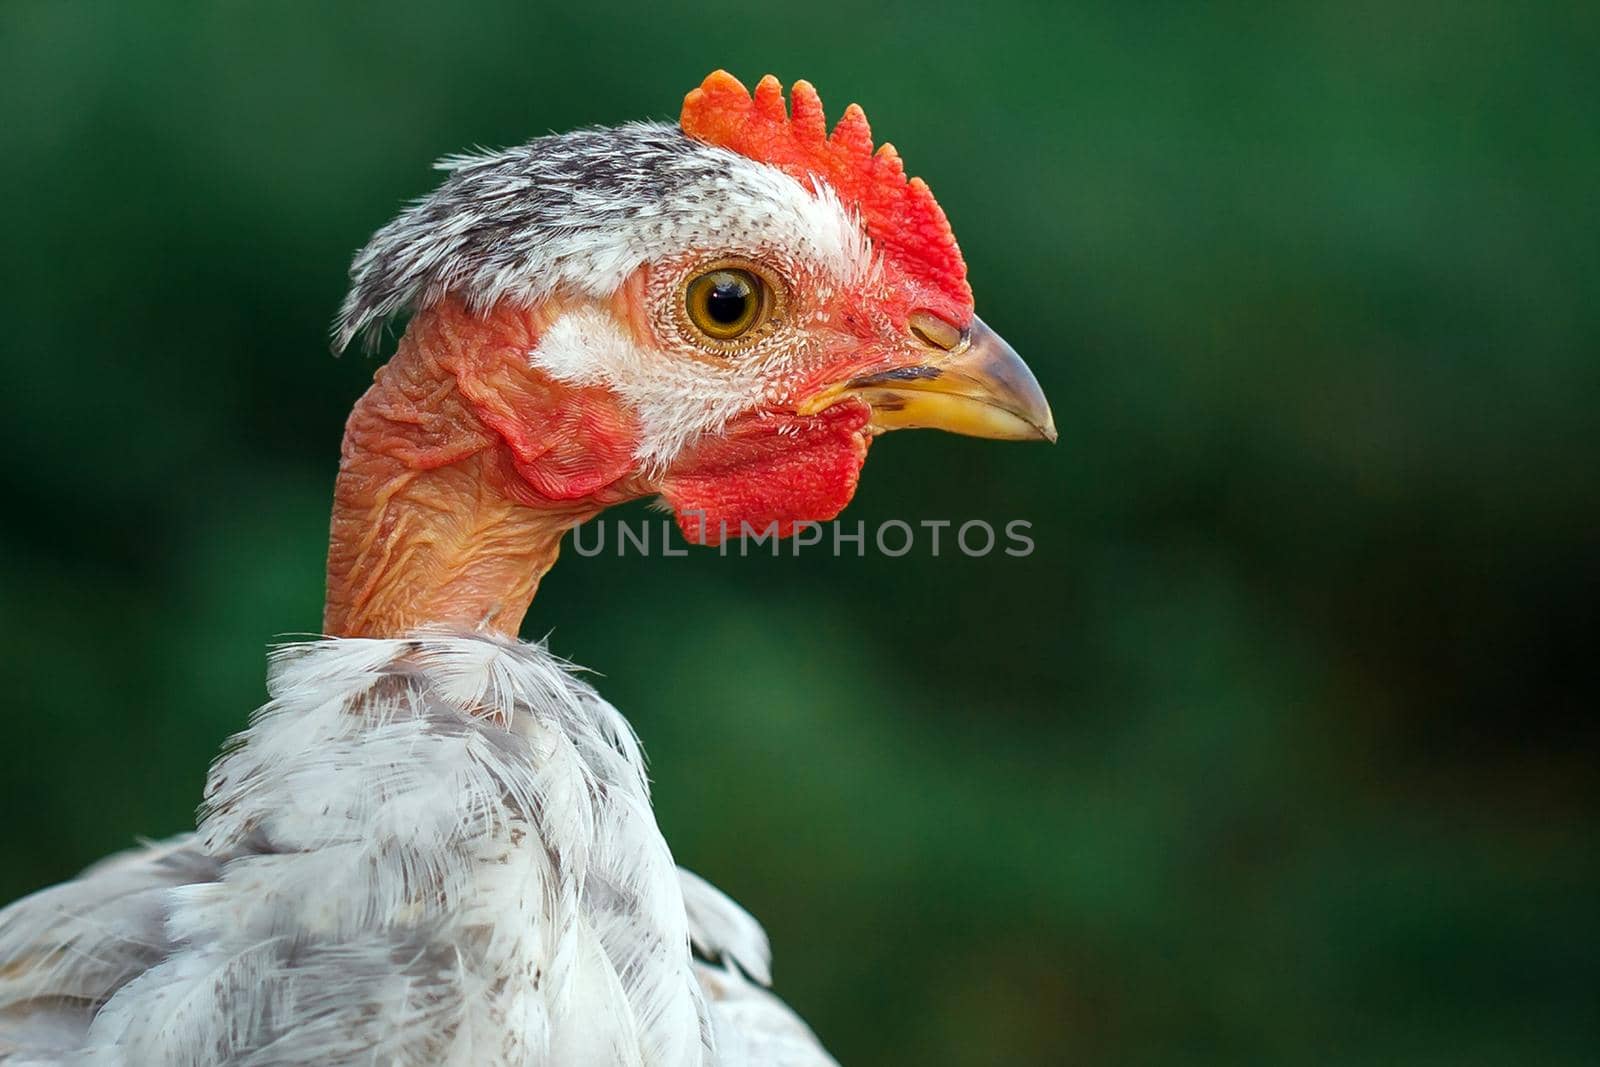 Bald neck white chicken portrait on the dark green background, profile